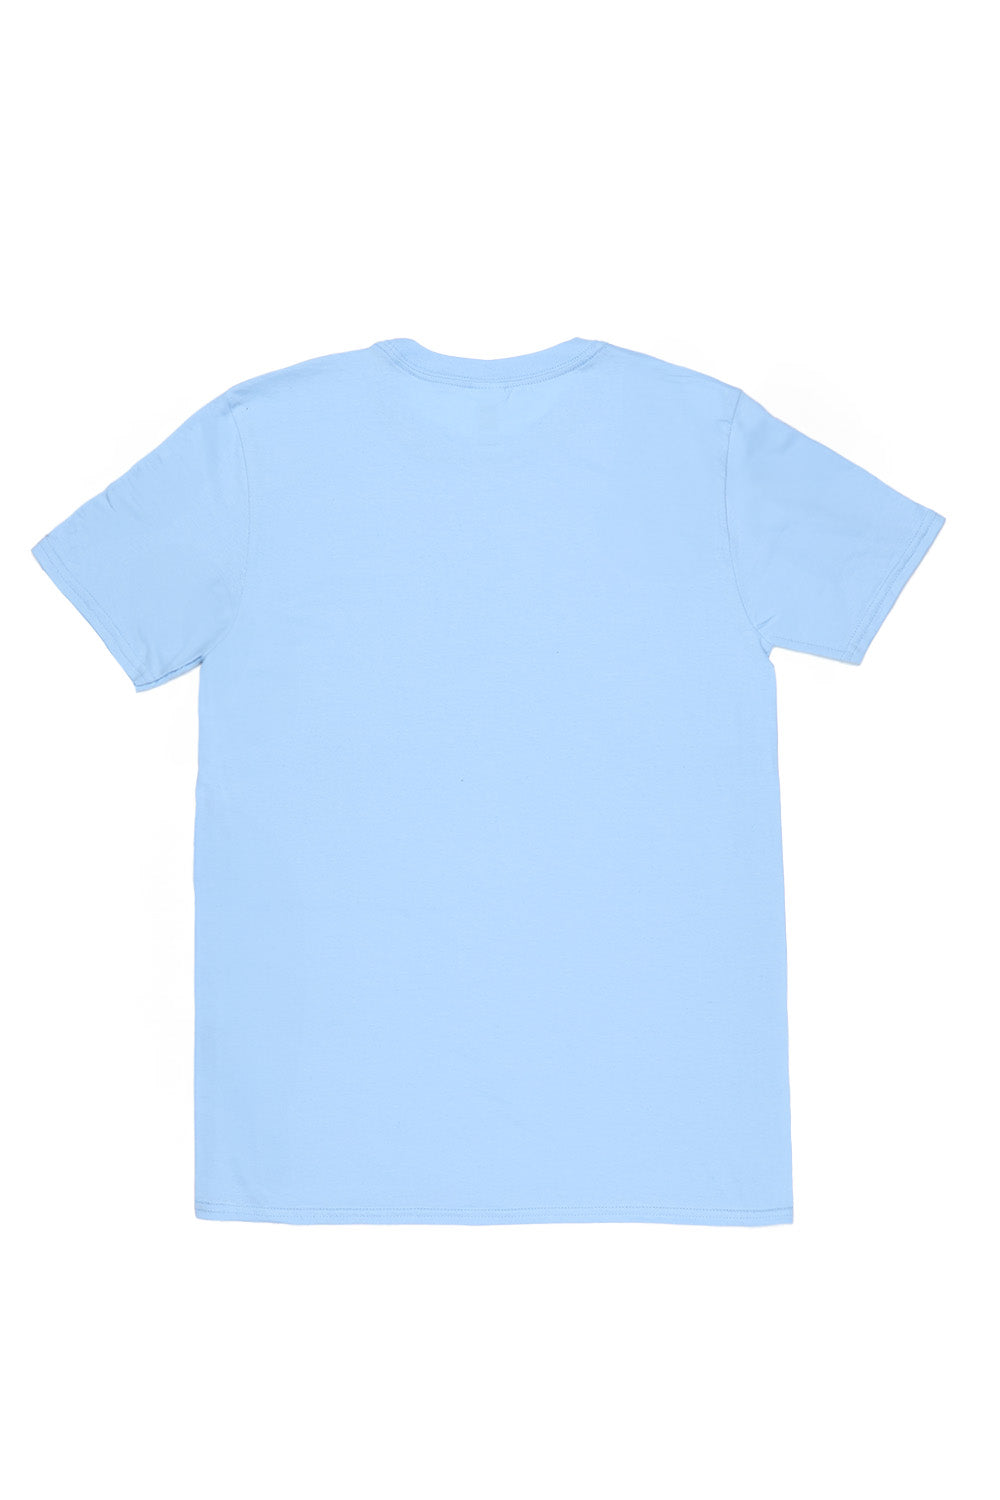 Illinois T-Shirt in Light Blue (Custom Packs)